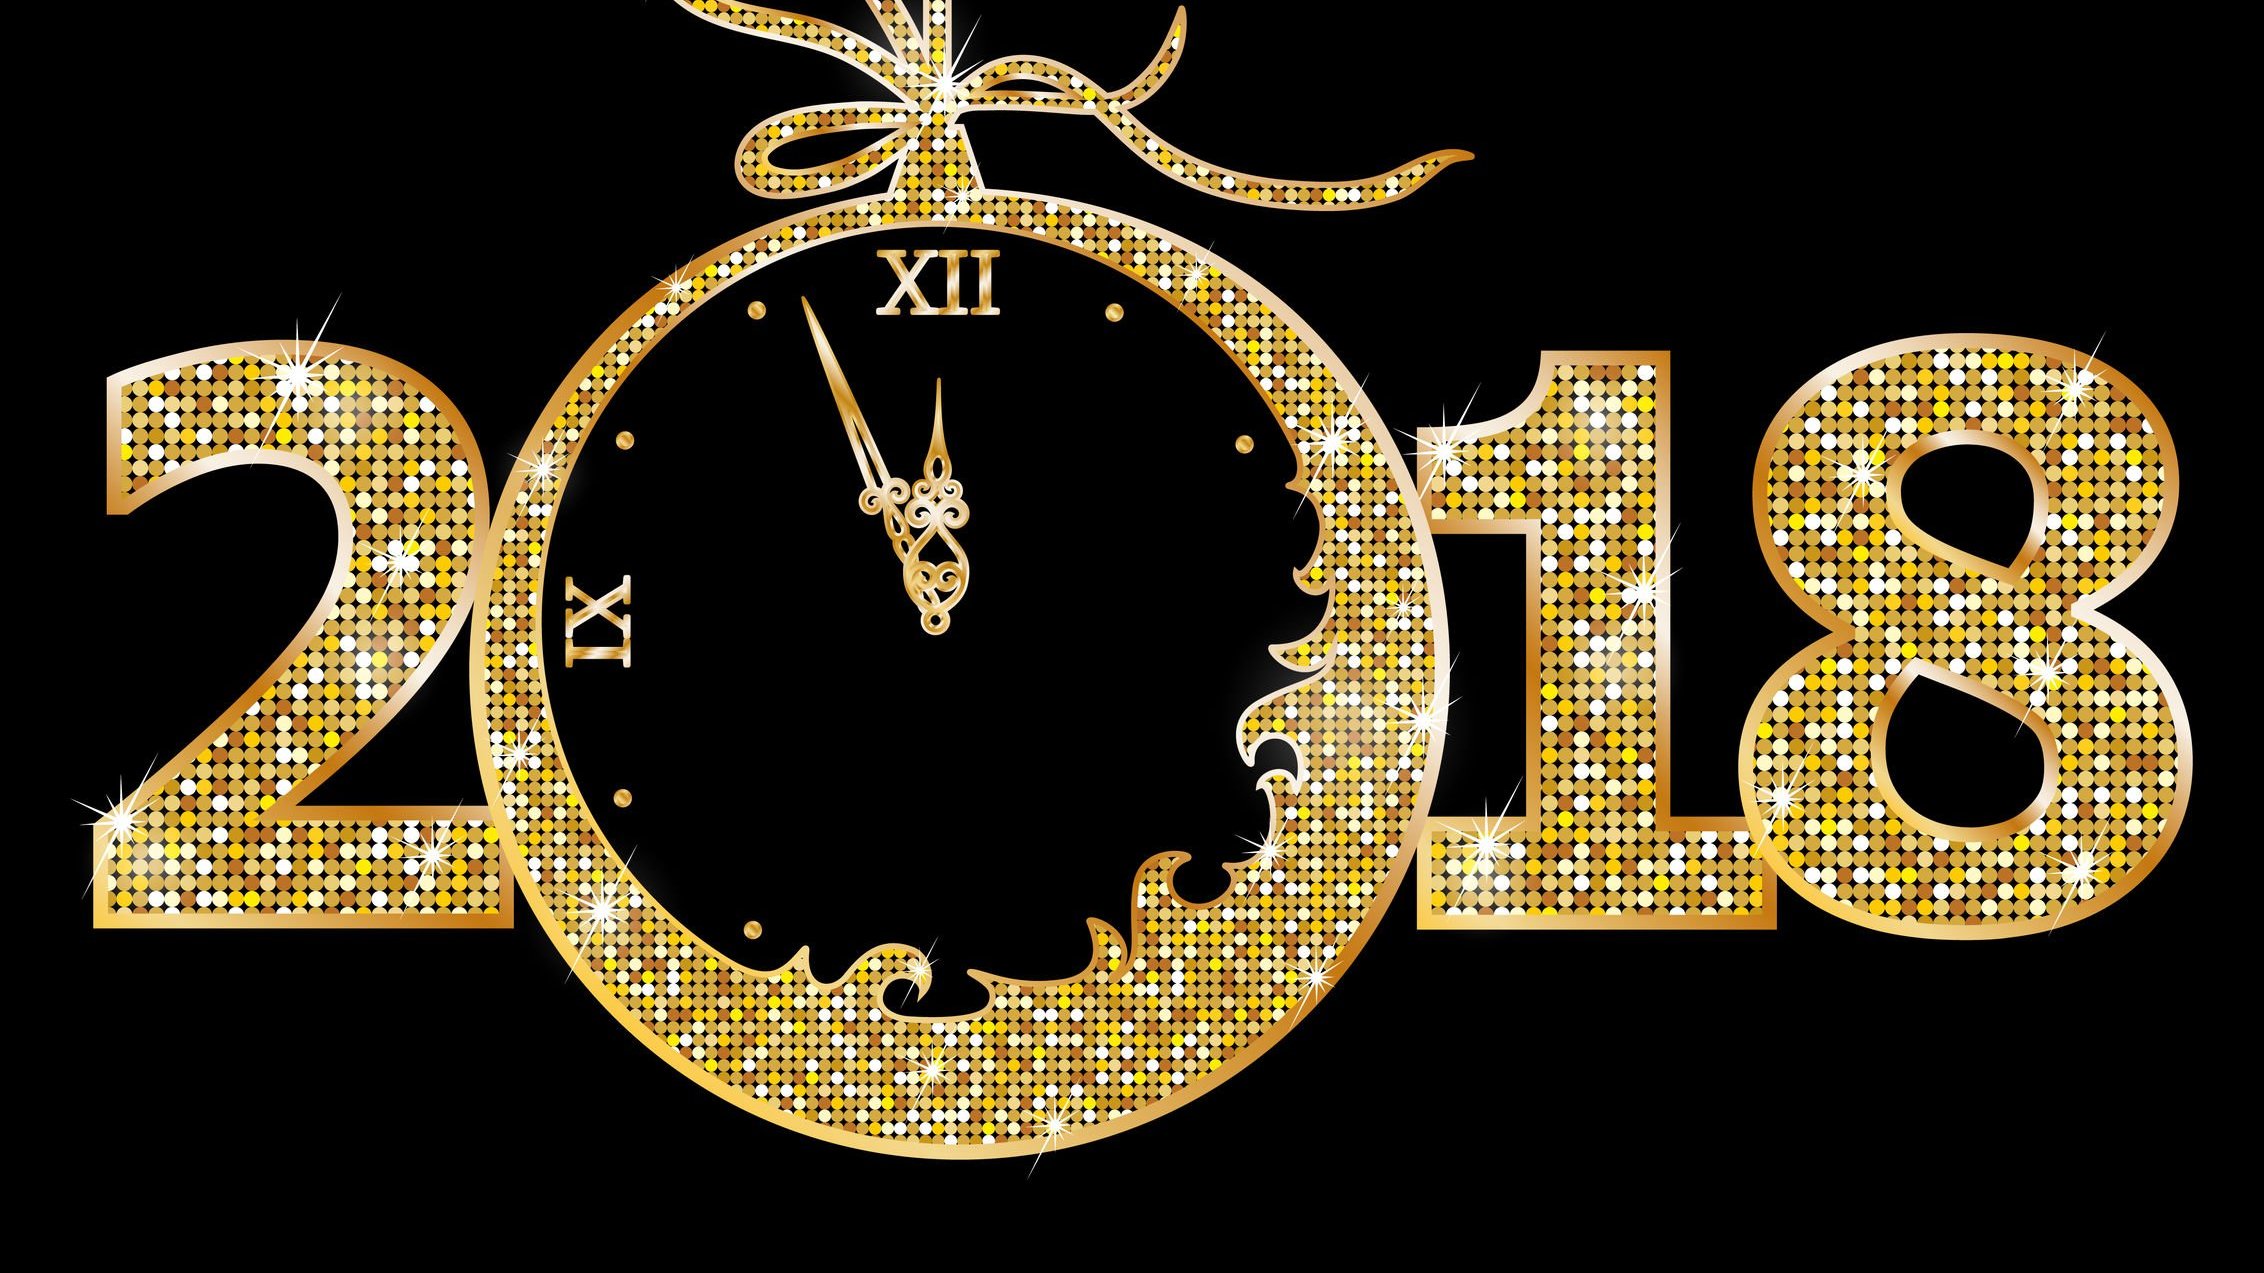 Número 2018 escrito com brilhos dourados, e dentro do número 0, um relógio mostra o horário 11:57.